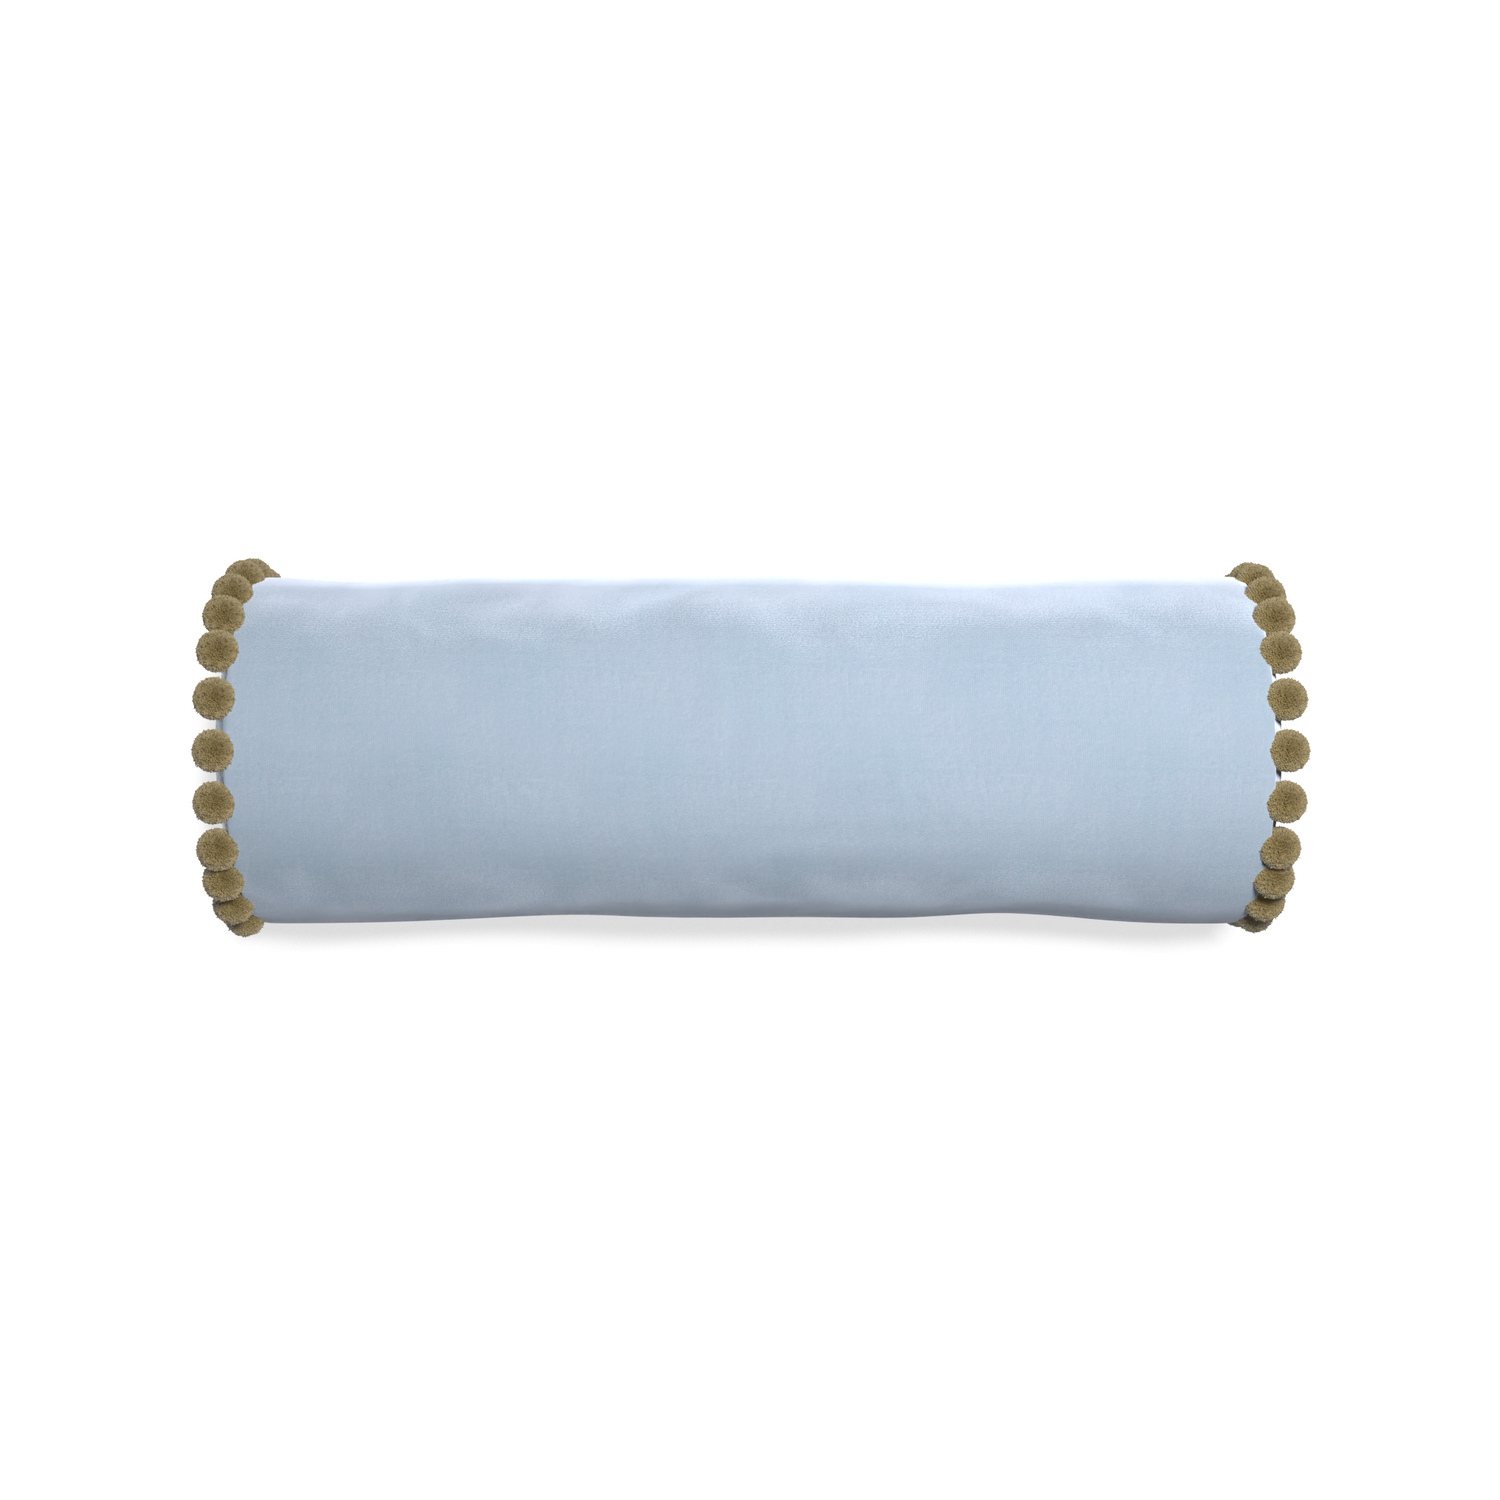 bolster light blue velvet pillow with olive green pom pom